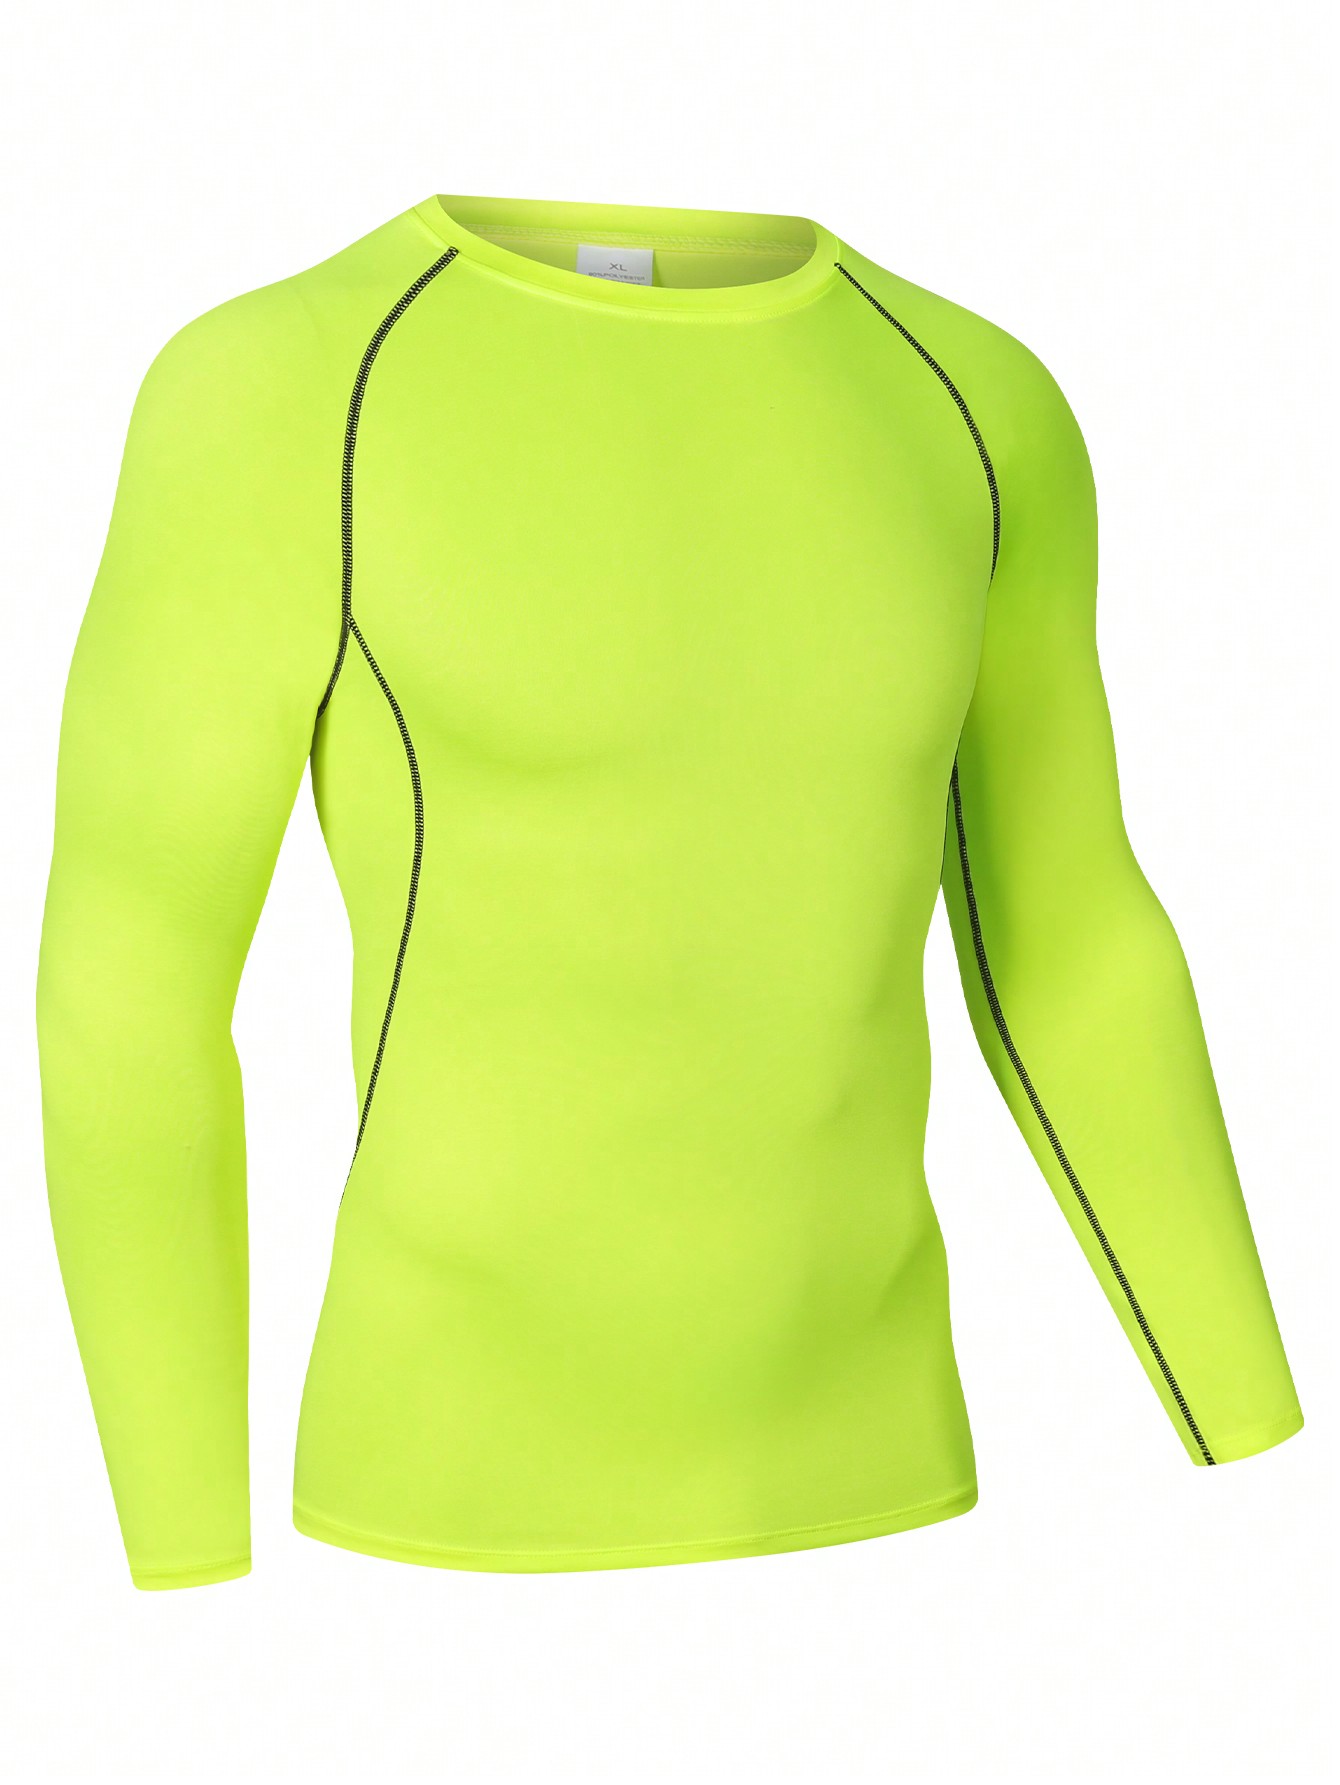 Мужская эластичная компрессионная рубашка для фитнеса с длинными рукавами, зеленый многоцветная быстросохнущая спортивная футболка с коротким рукавом для фитнеса тренировочная футболка для бега дышащая спортивная одежд